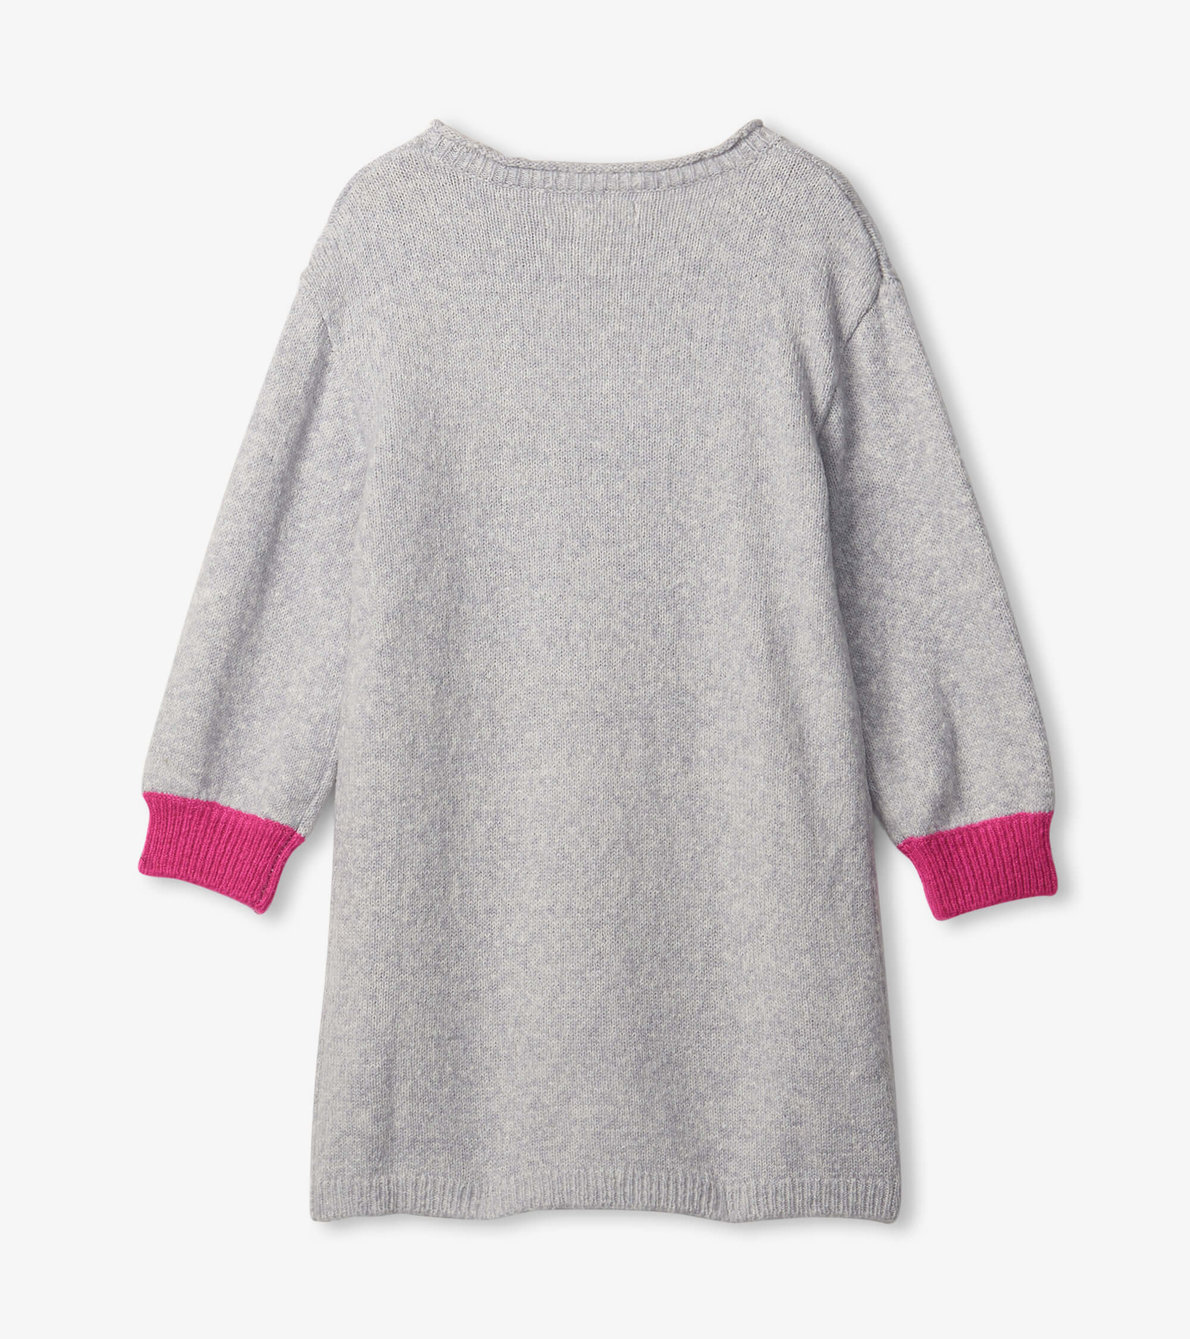 View larger image of Girls Unicorn Sweater Dress